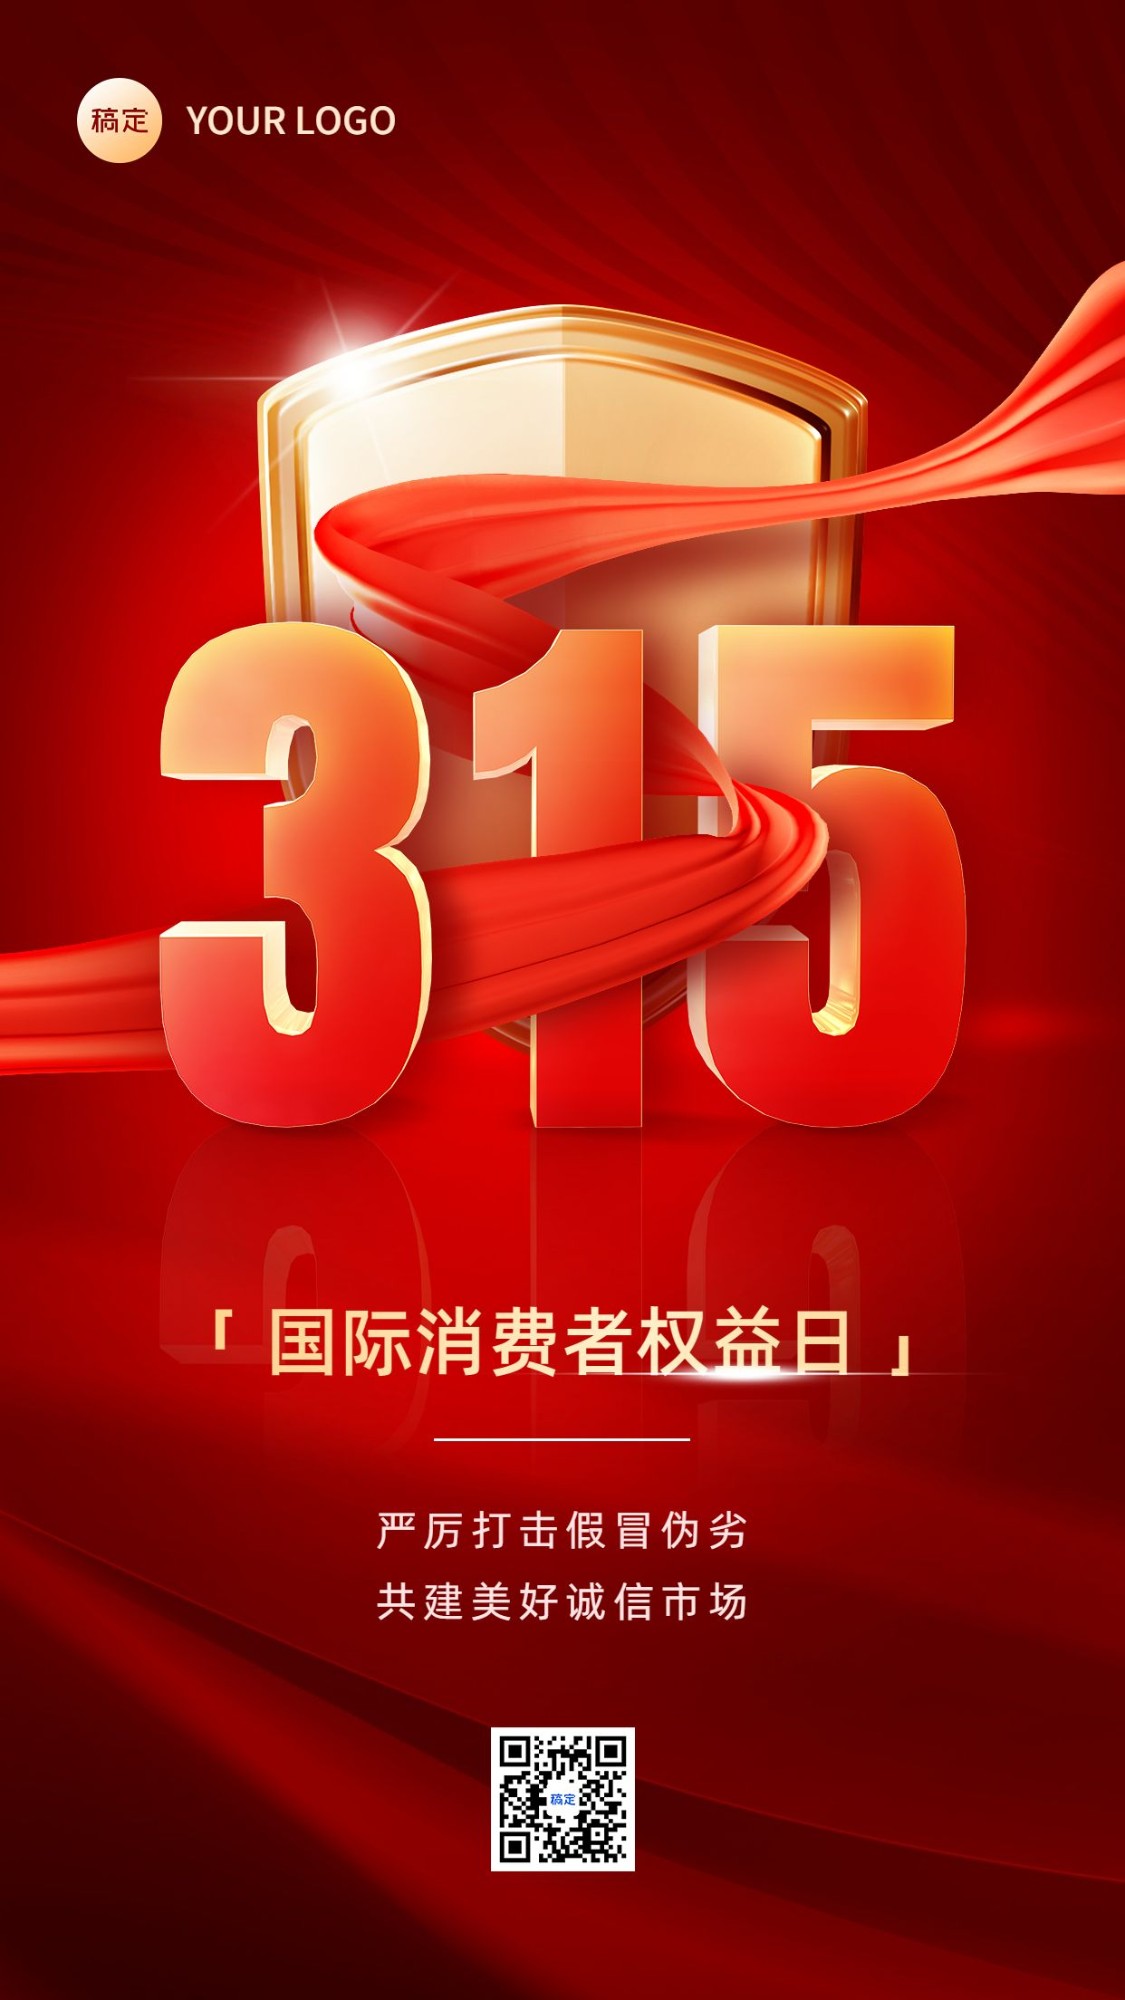 315消费者权益日宣传推广手机海报